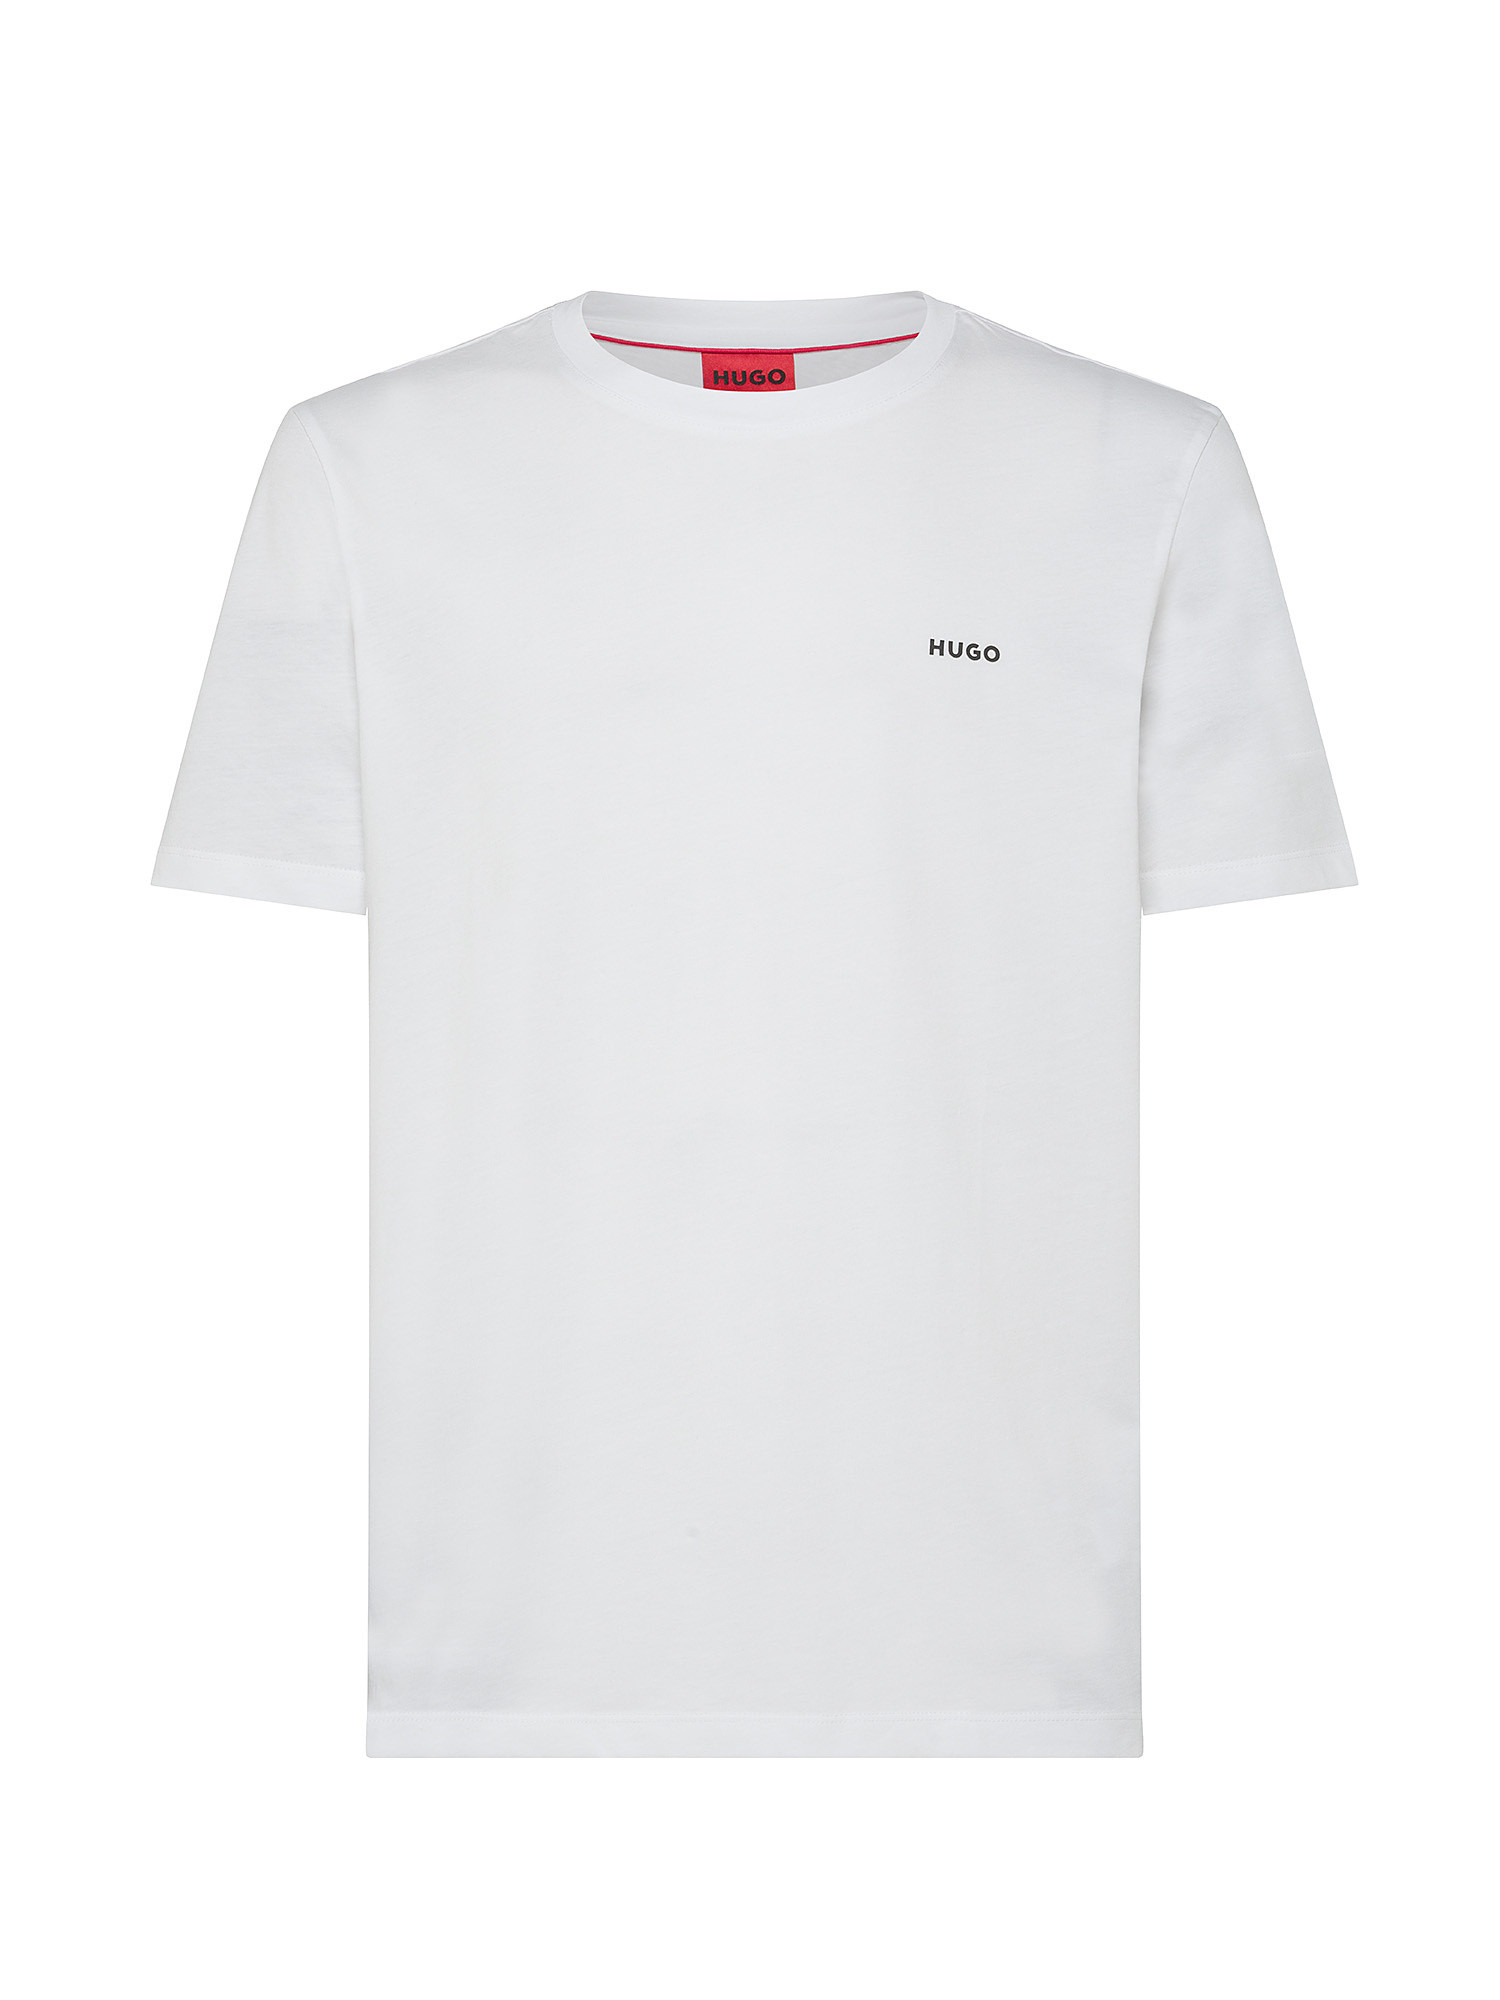 Hugo - Logo cotton T-shirt, White, large image number 0